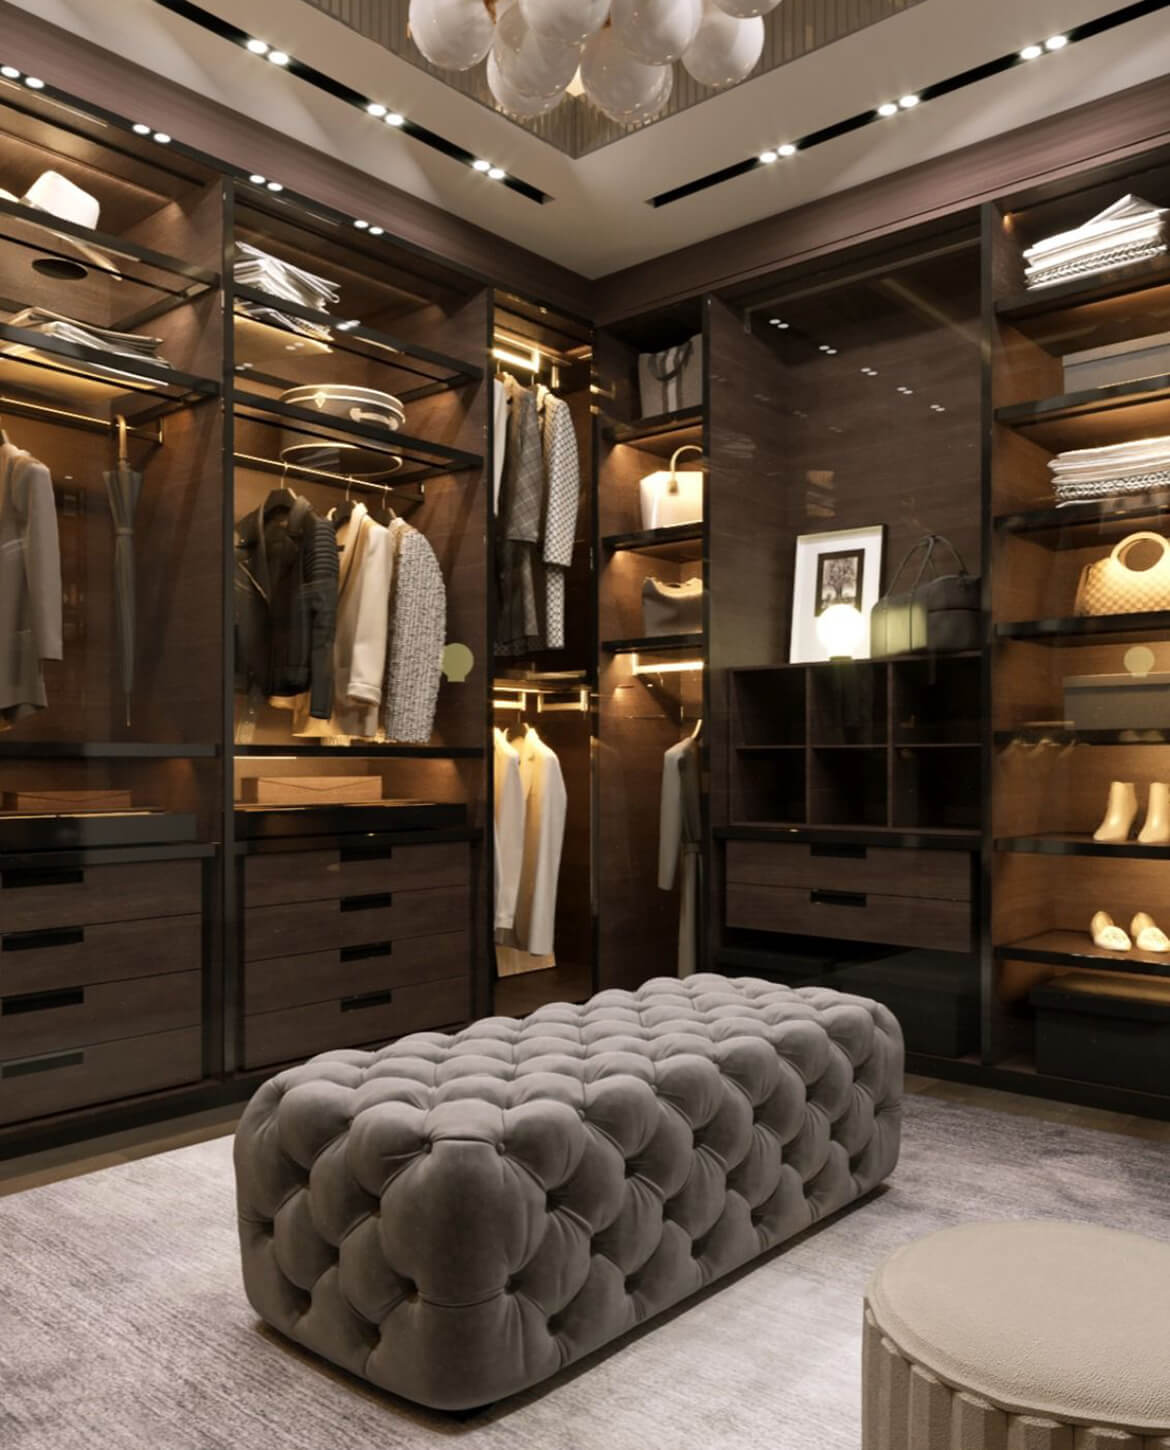 Exquisite Dressing Room Design by Italian Designers